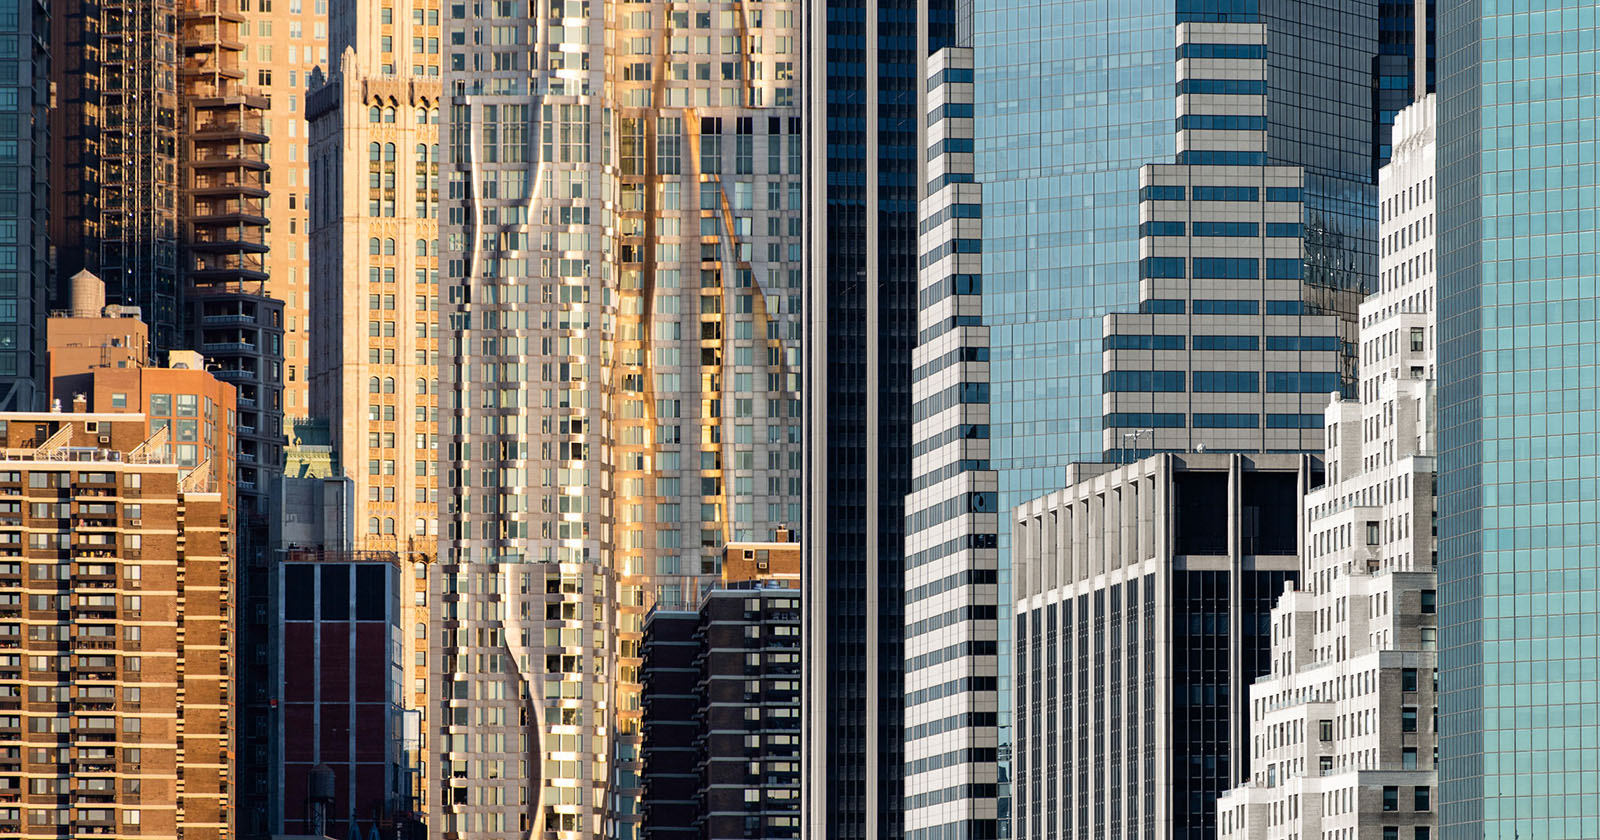 La ciudad de Nueva York fotografiada como una "colcha urbana"